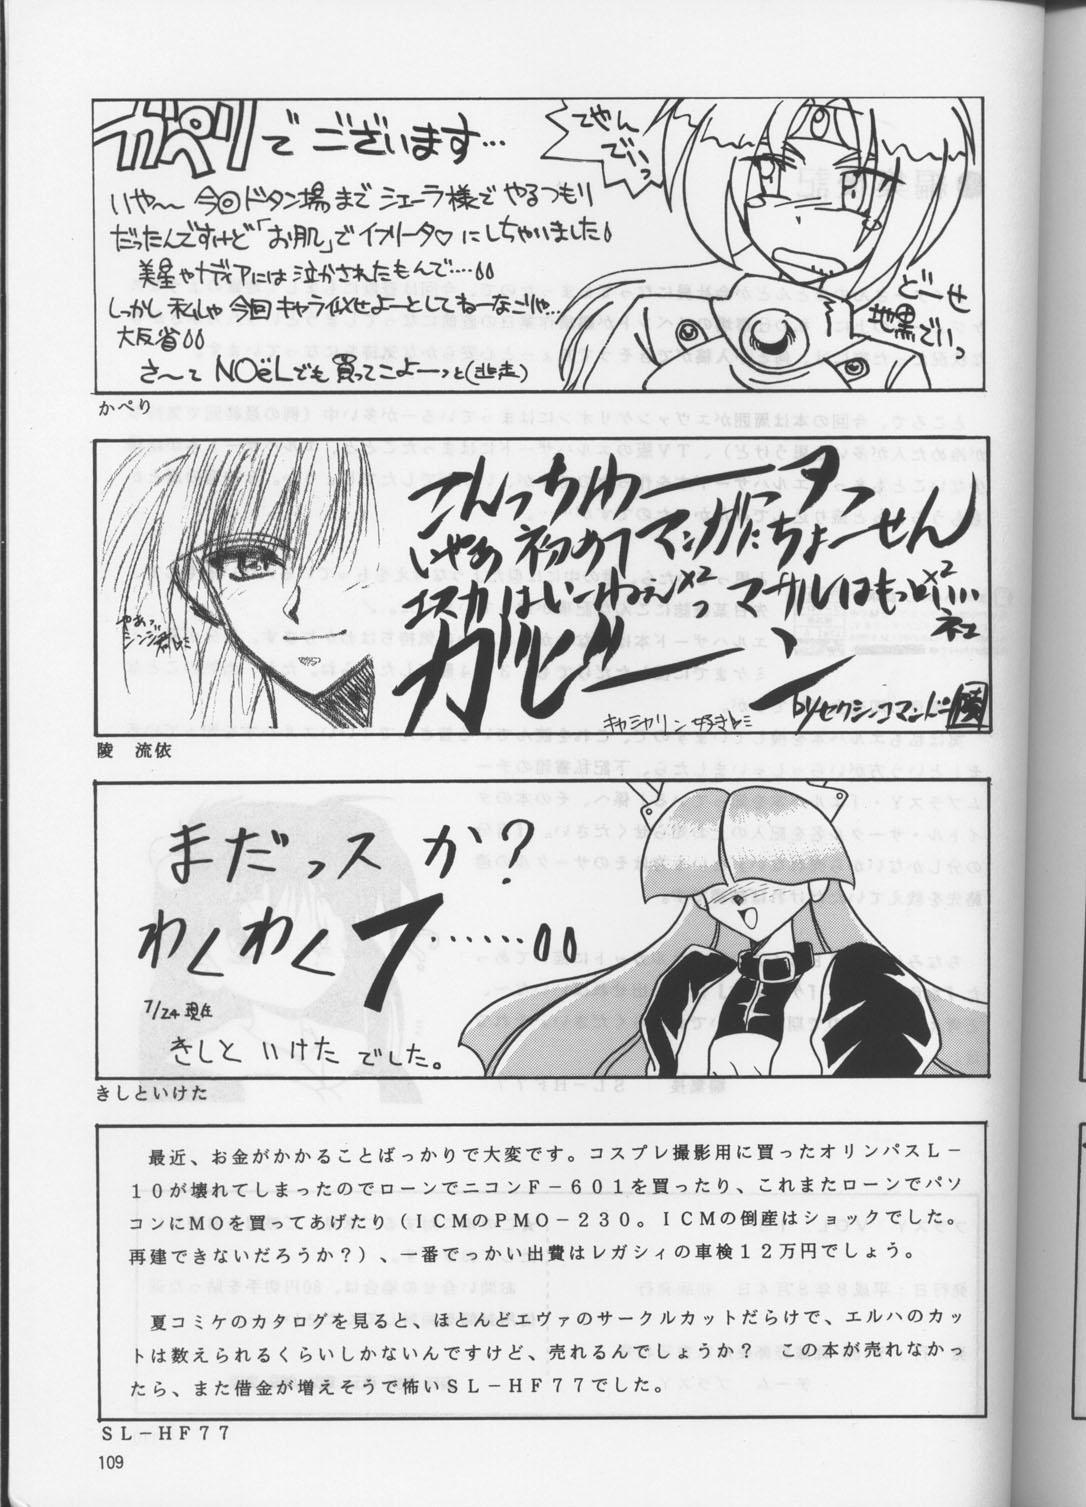 Escort PLUS-Y Vol.18 - Street fighter El hazard The vision of escaflowne Gundam x Gay Skinny - Page 108